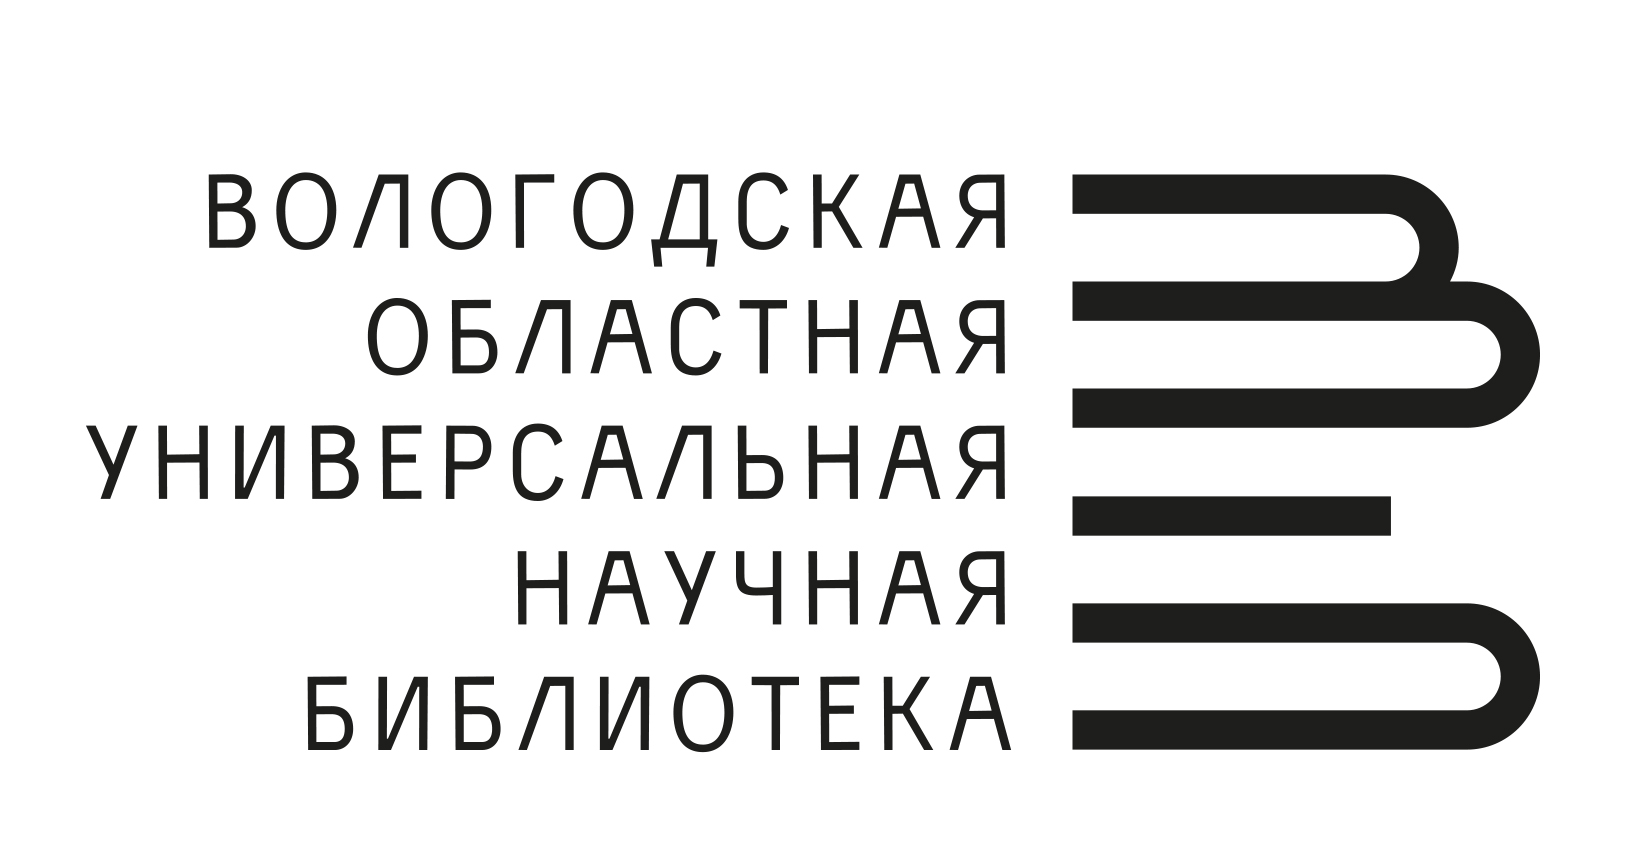 Логотип Вологодская областная универсальная научная библиотека